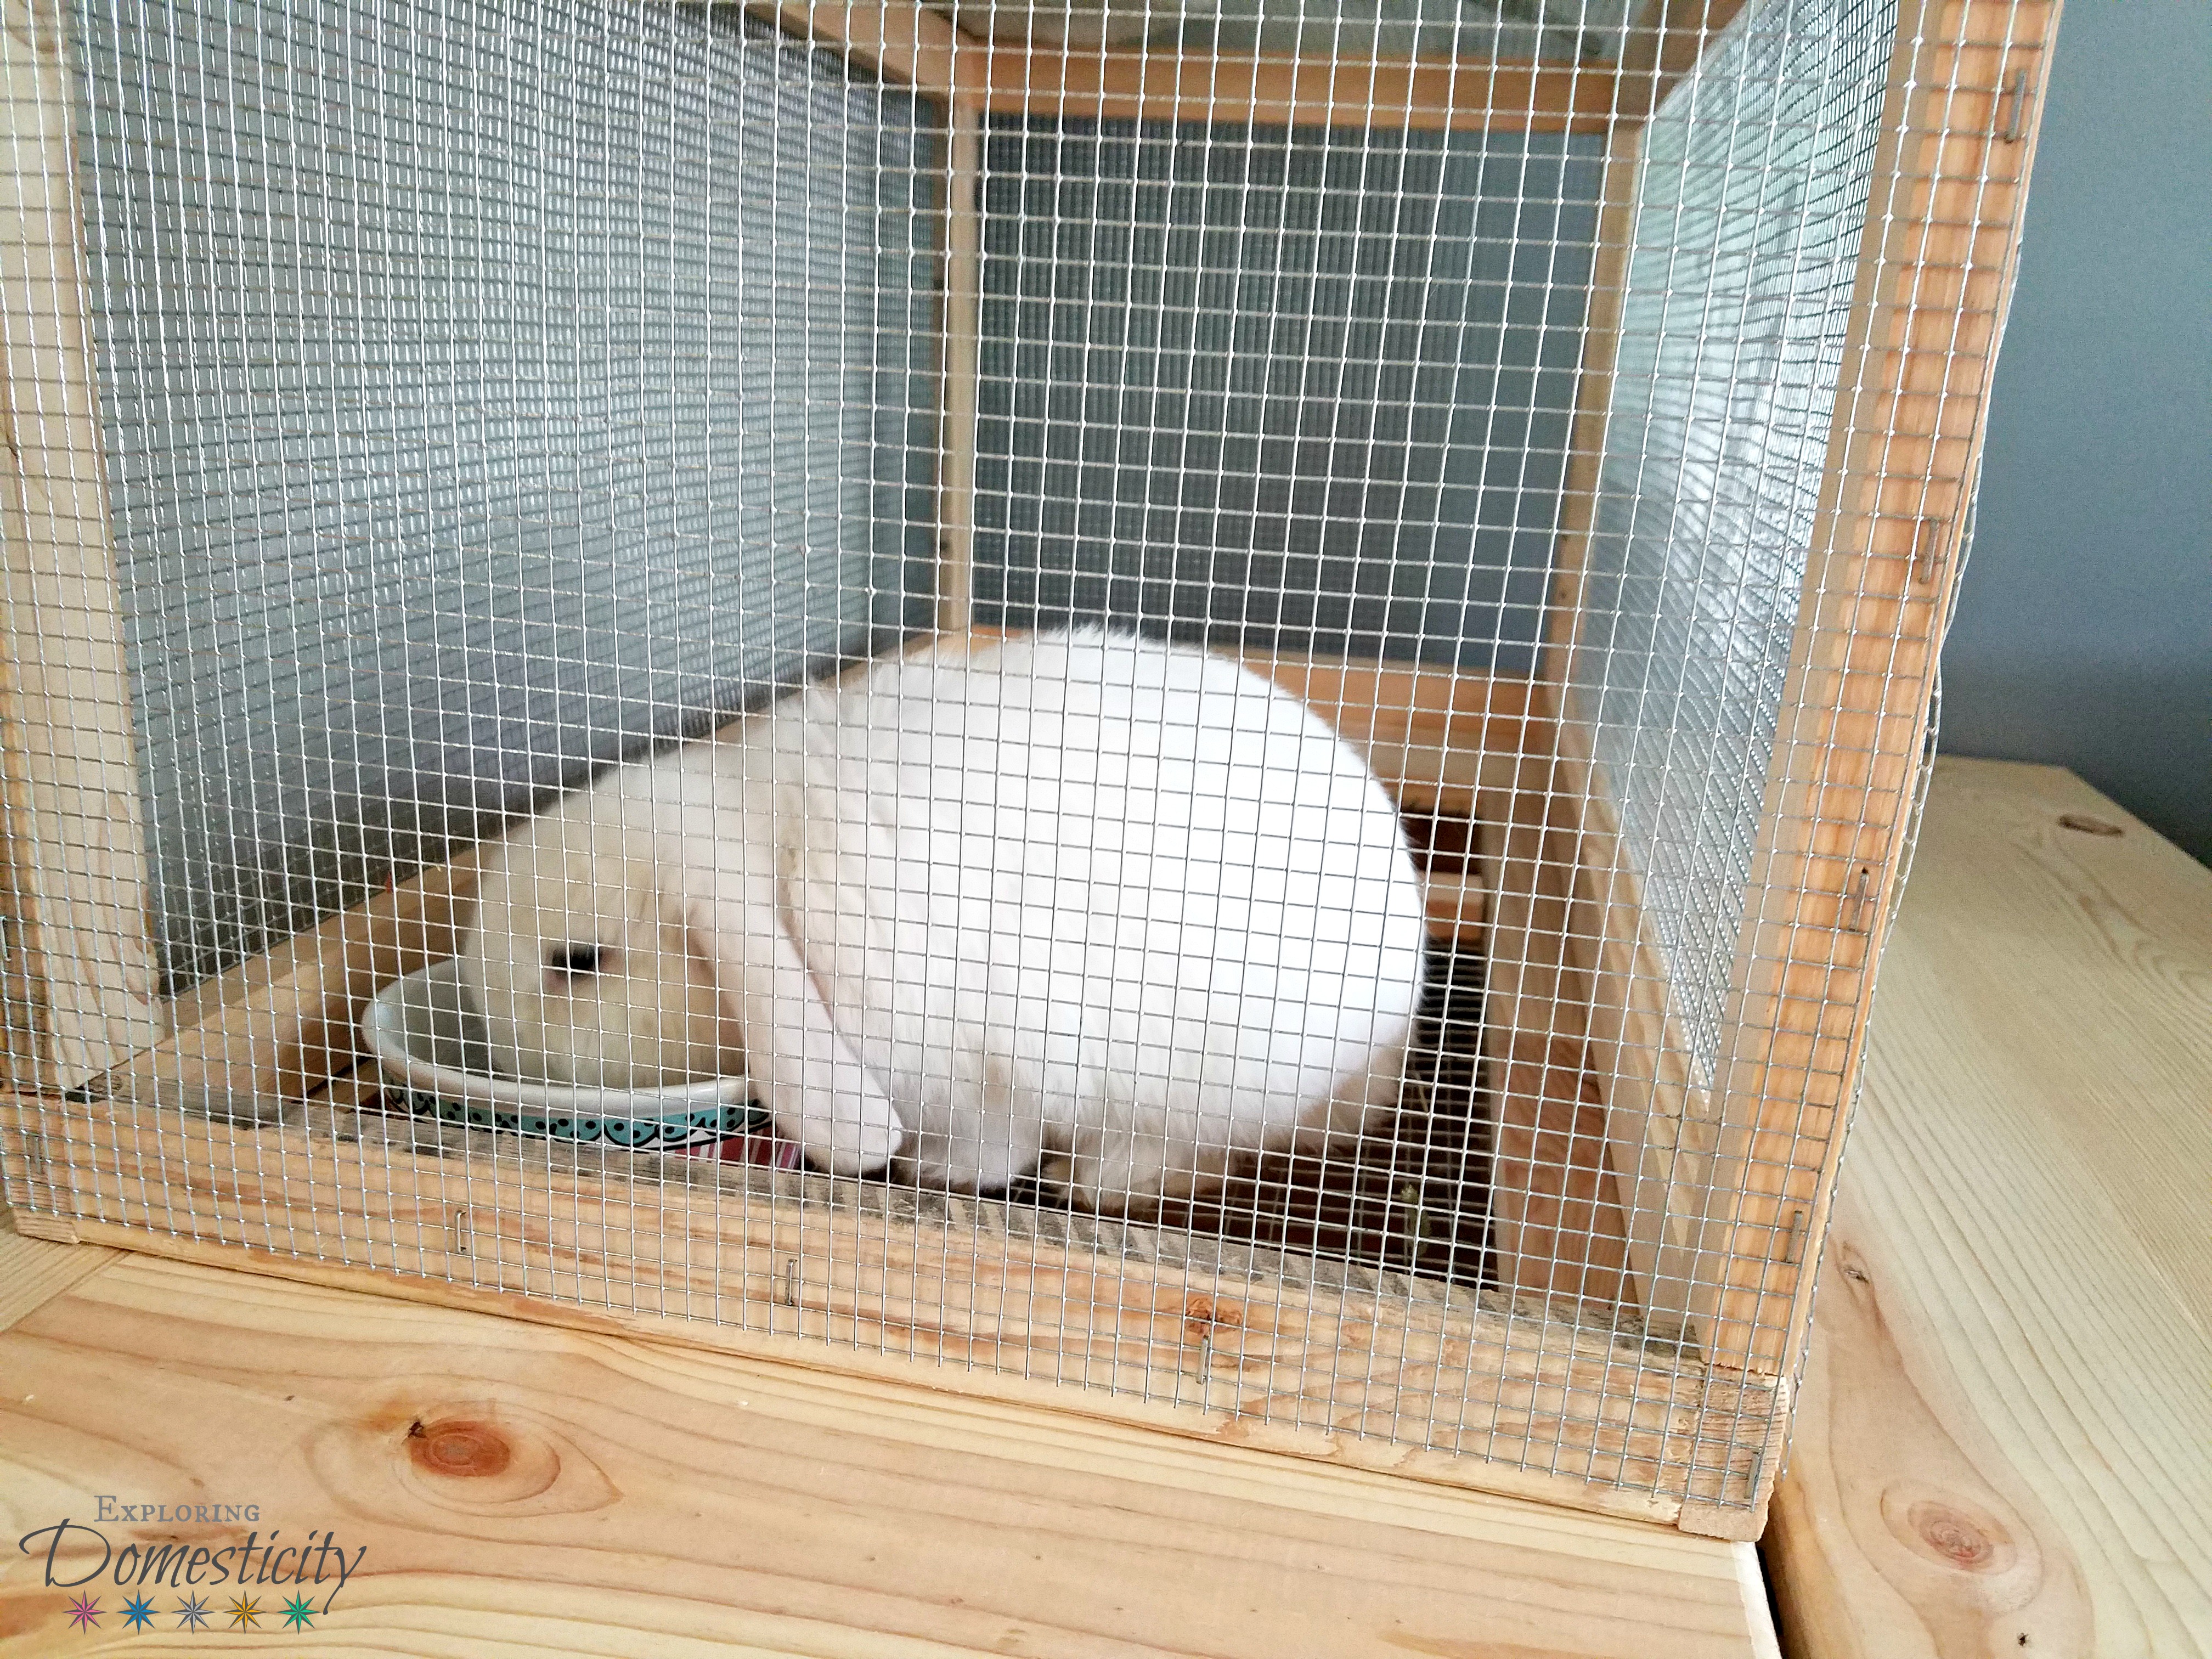 holland lop bunny cage